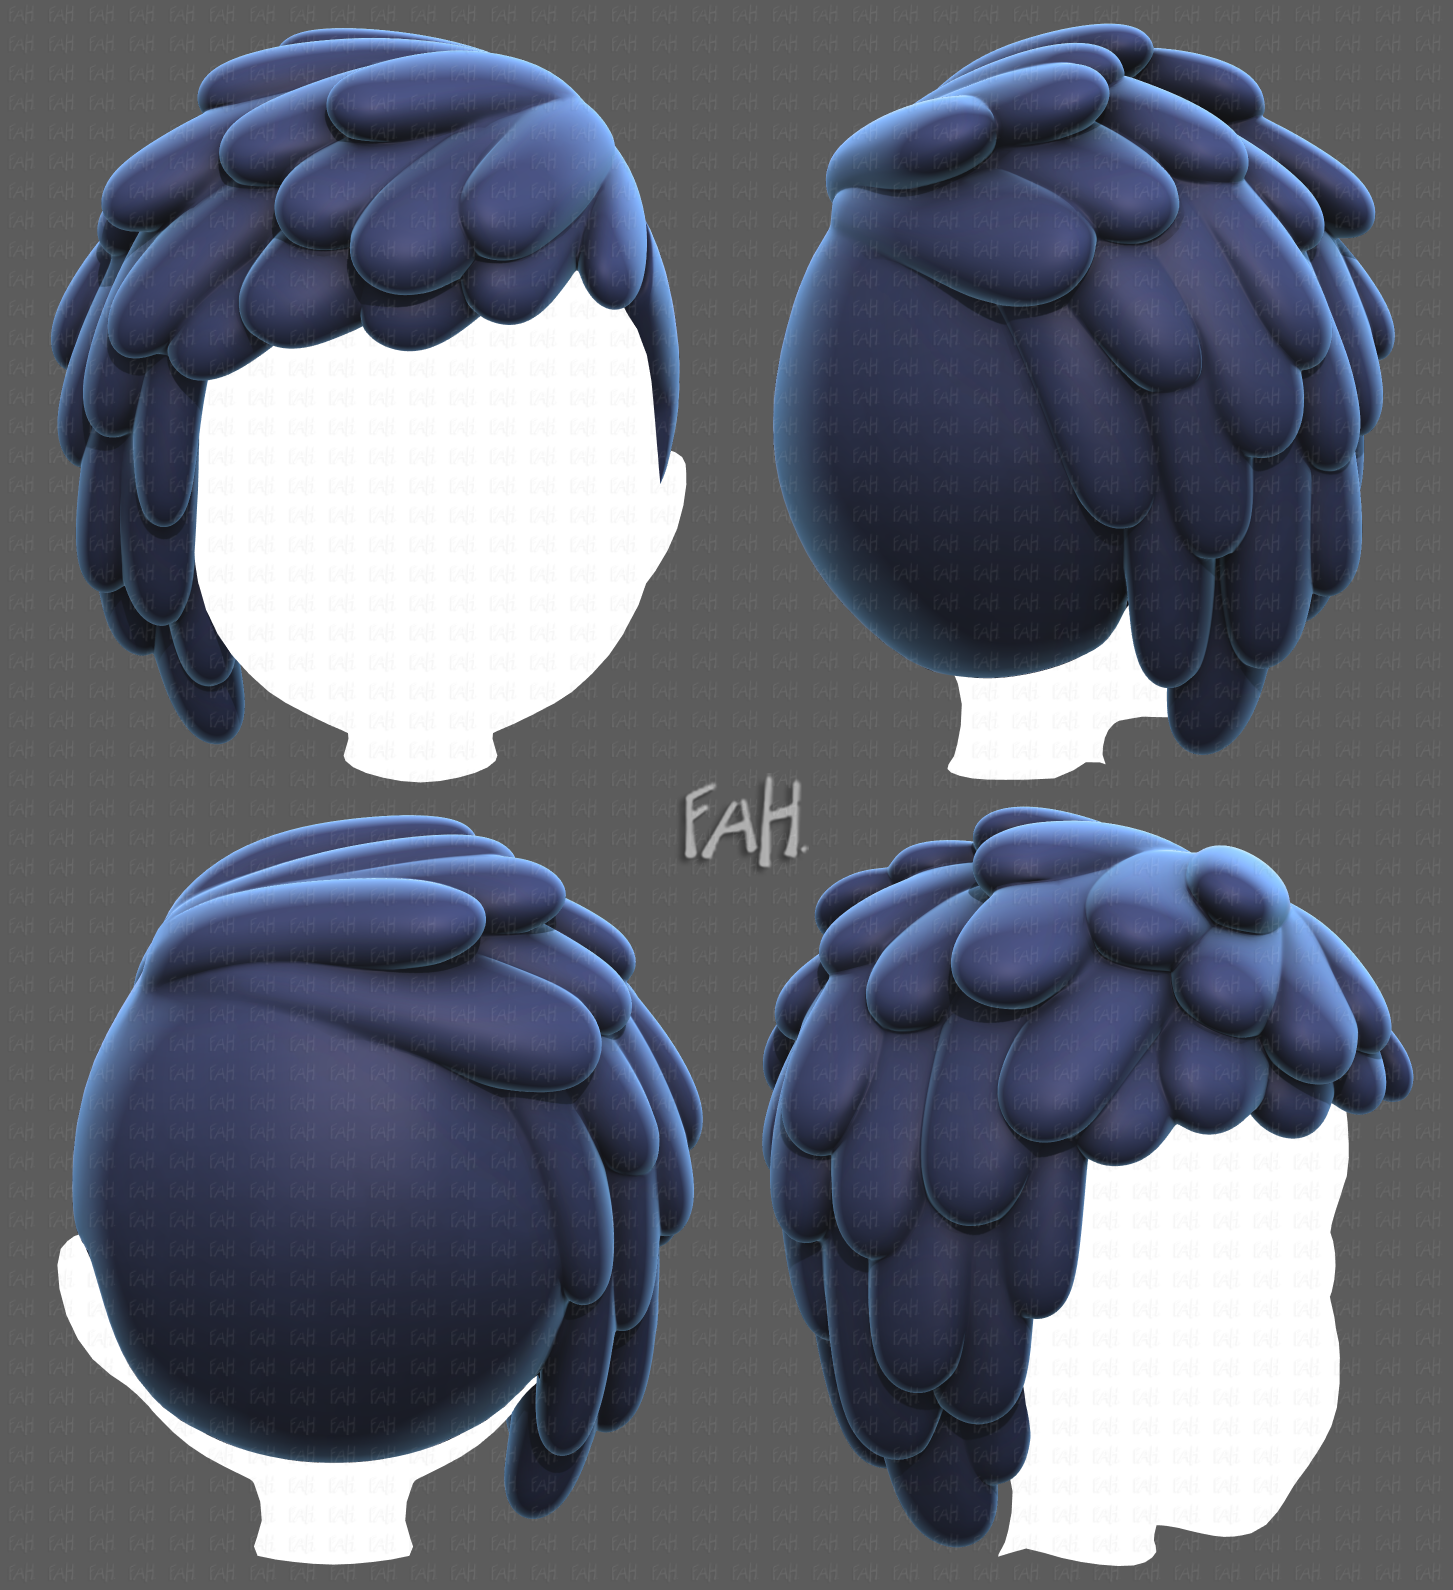 3d hair style for boy v62 3D Model in Clothing 3DExport